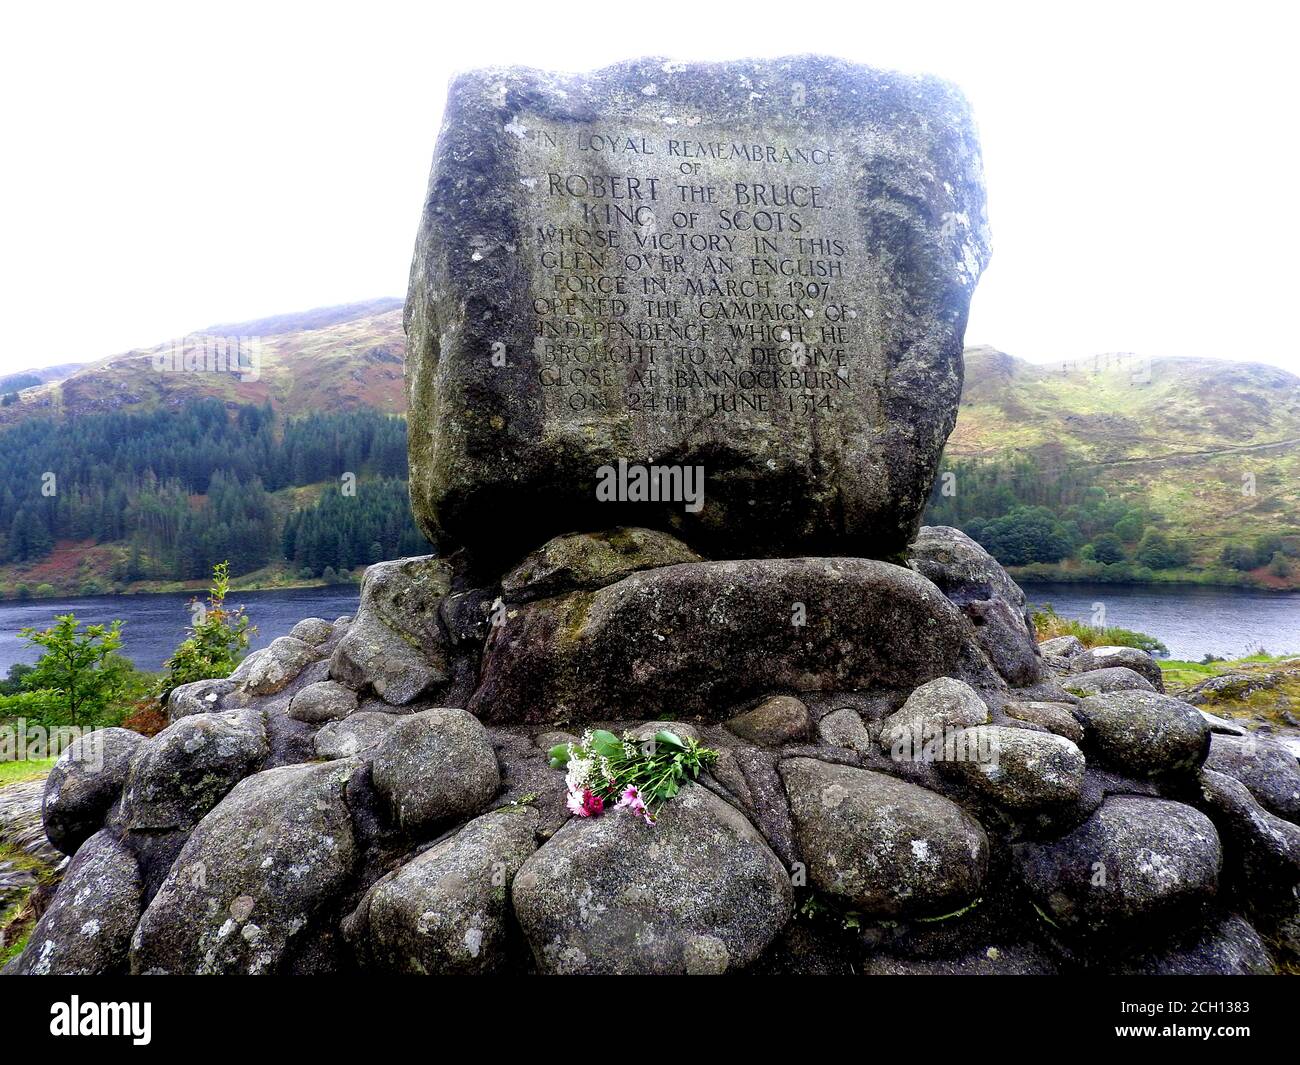 Ein Blumenschmuck am Robert the Bruce (Earl of Carrick) Memorial, nahe Loch Troon, Galloway (2020 Foto). - die Schlacht von Glen Trool fand im ersten Krieg der schottischen Unabhängigkeit statt, im April 1307. Glen Trool ist ein schmaler glen im südlichen Hochland von Galloway, Schottland, in dem sich Loch Trool (hinter dem Denkmal) befindet. Als sich die englischen Soldaten in einer einzigen Datei dem schmalen glen näherten, schleuderten Bruce's Männer Felsbrocken und Pfeile nach unten auf sie. Die englischen Soldaten wurden getötet oder zogen sich zurück und Bruce siegte. Stockfoto